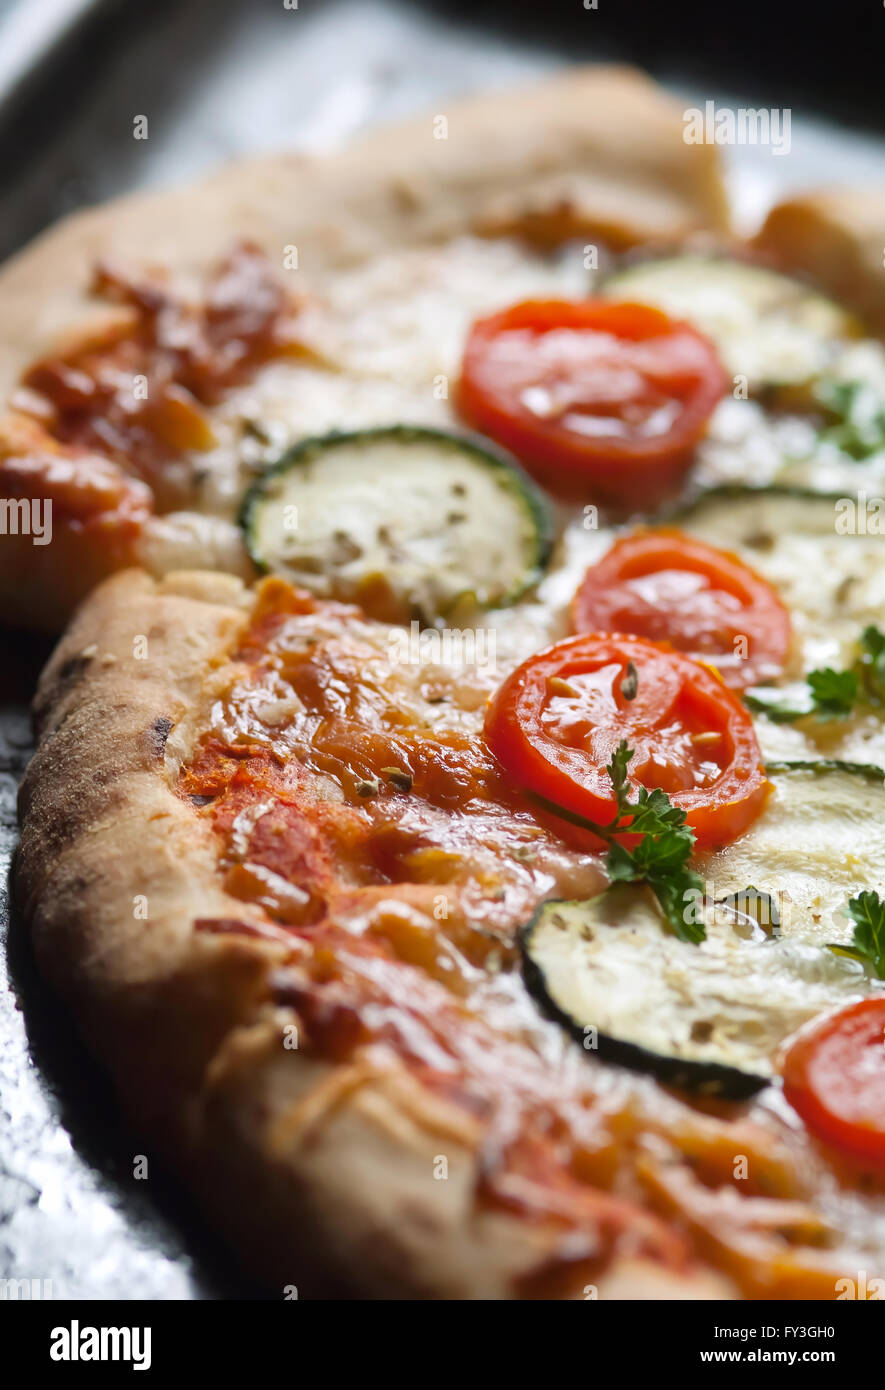 Pizza vegetariana con calabacín orgánica Foto de stock